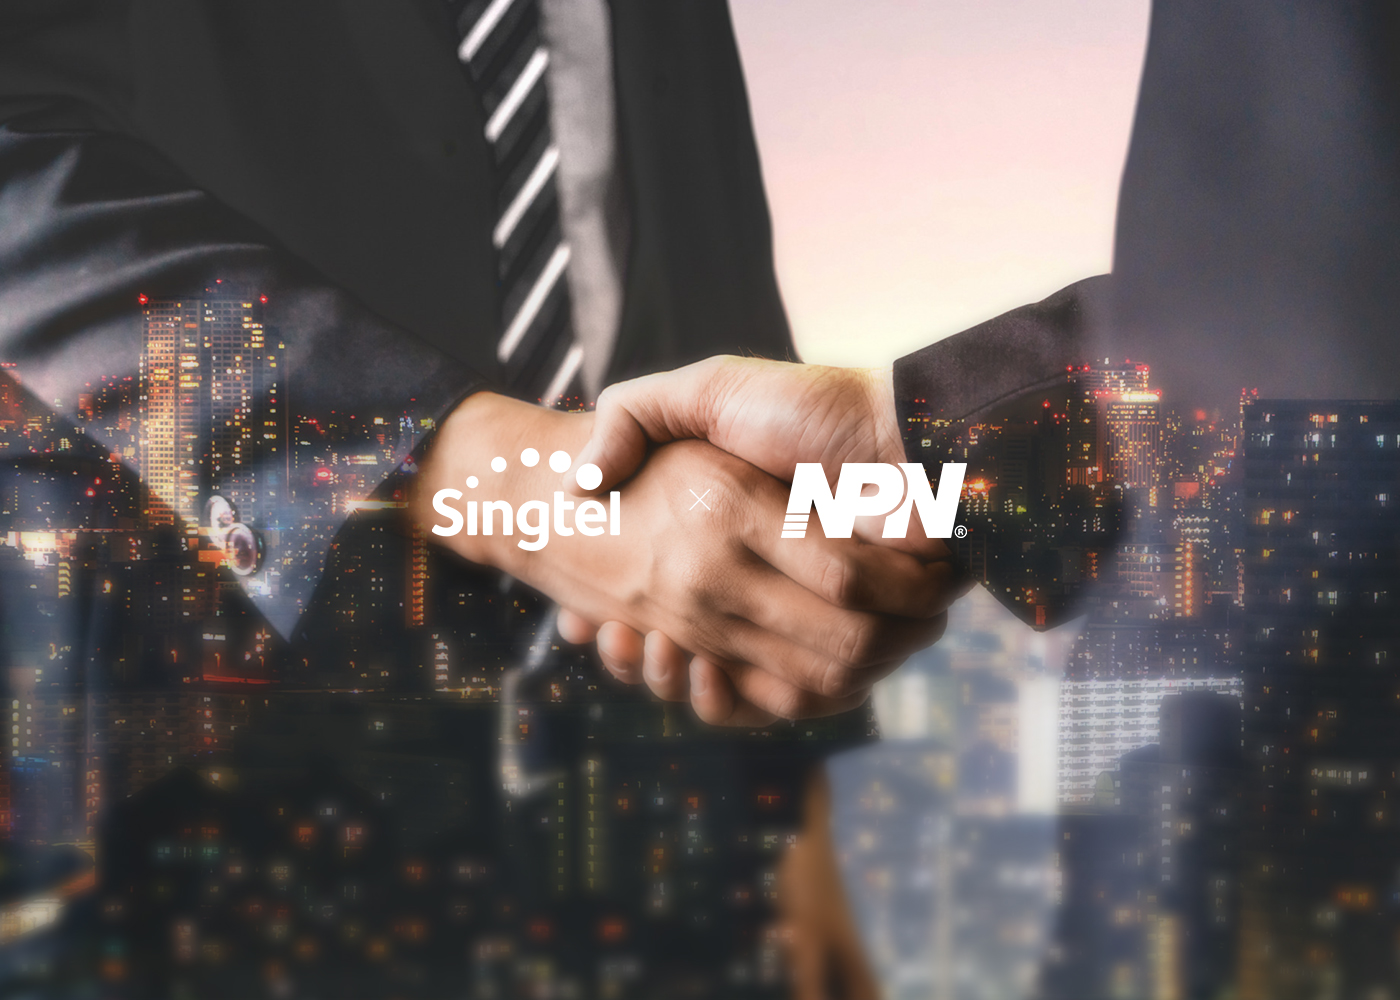 Singtel Enters E-Commerce Space with NPN Partnership